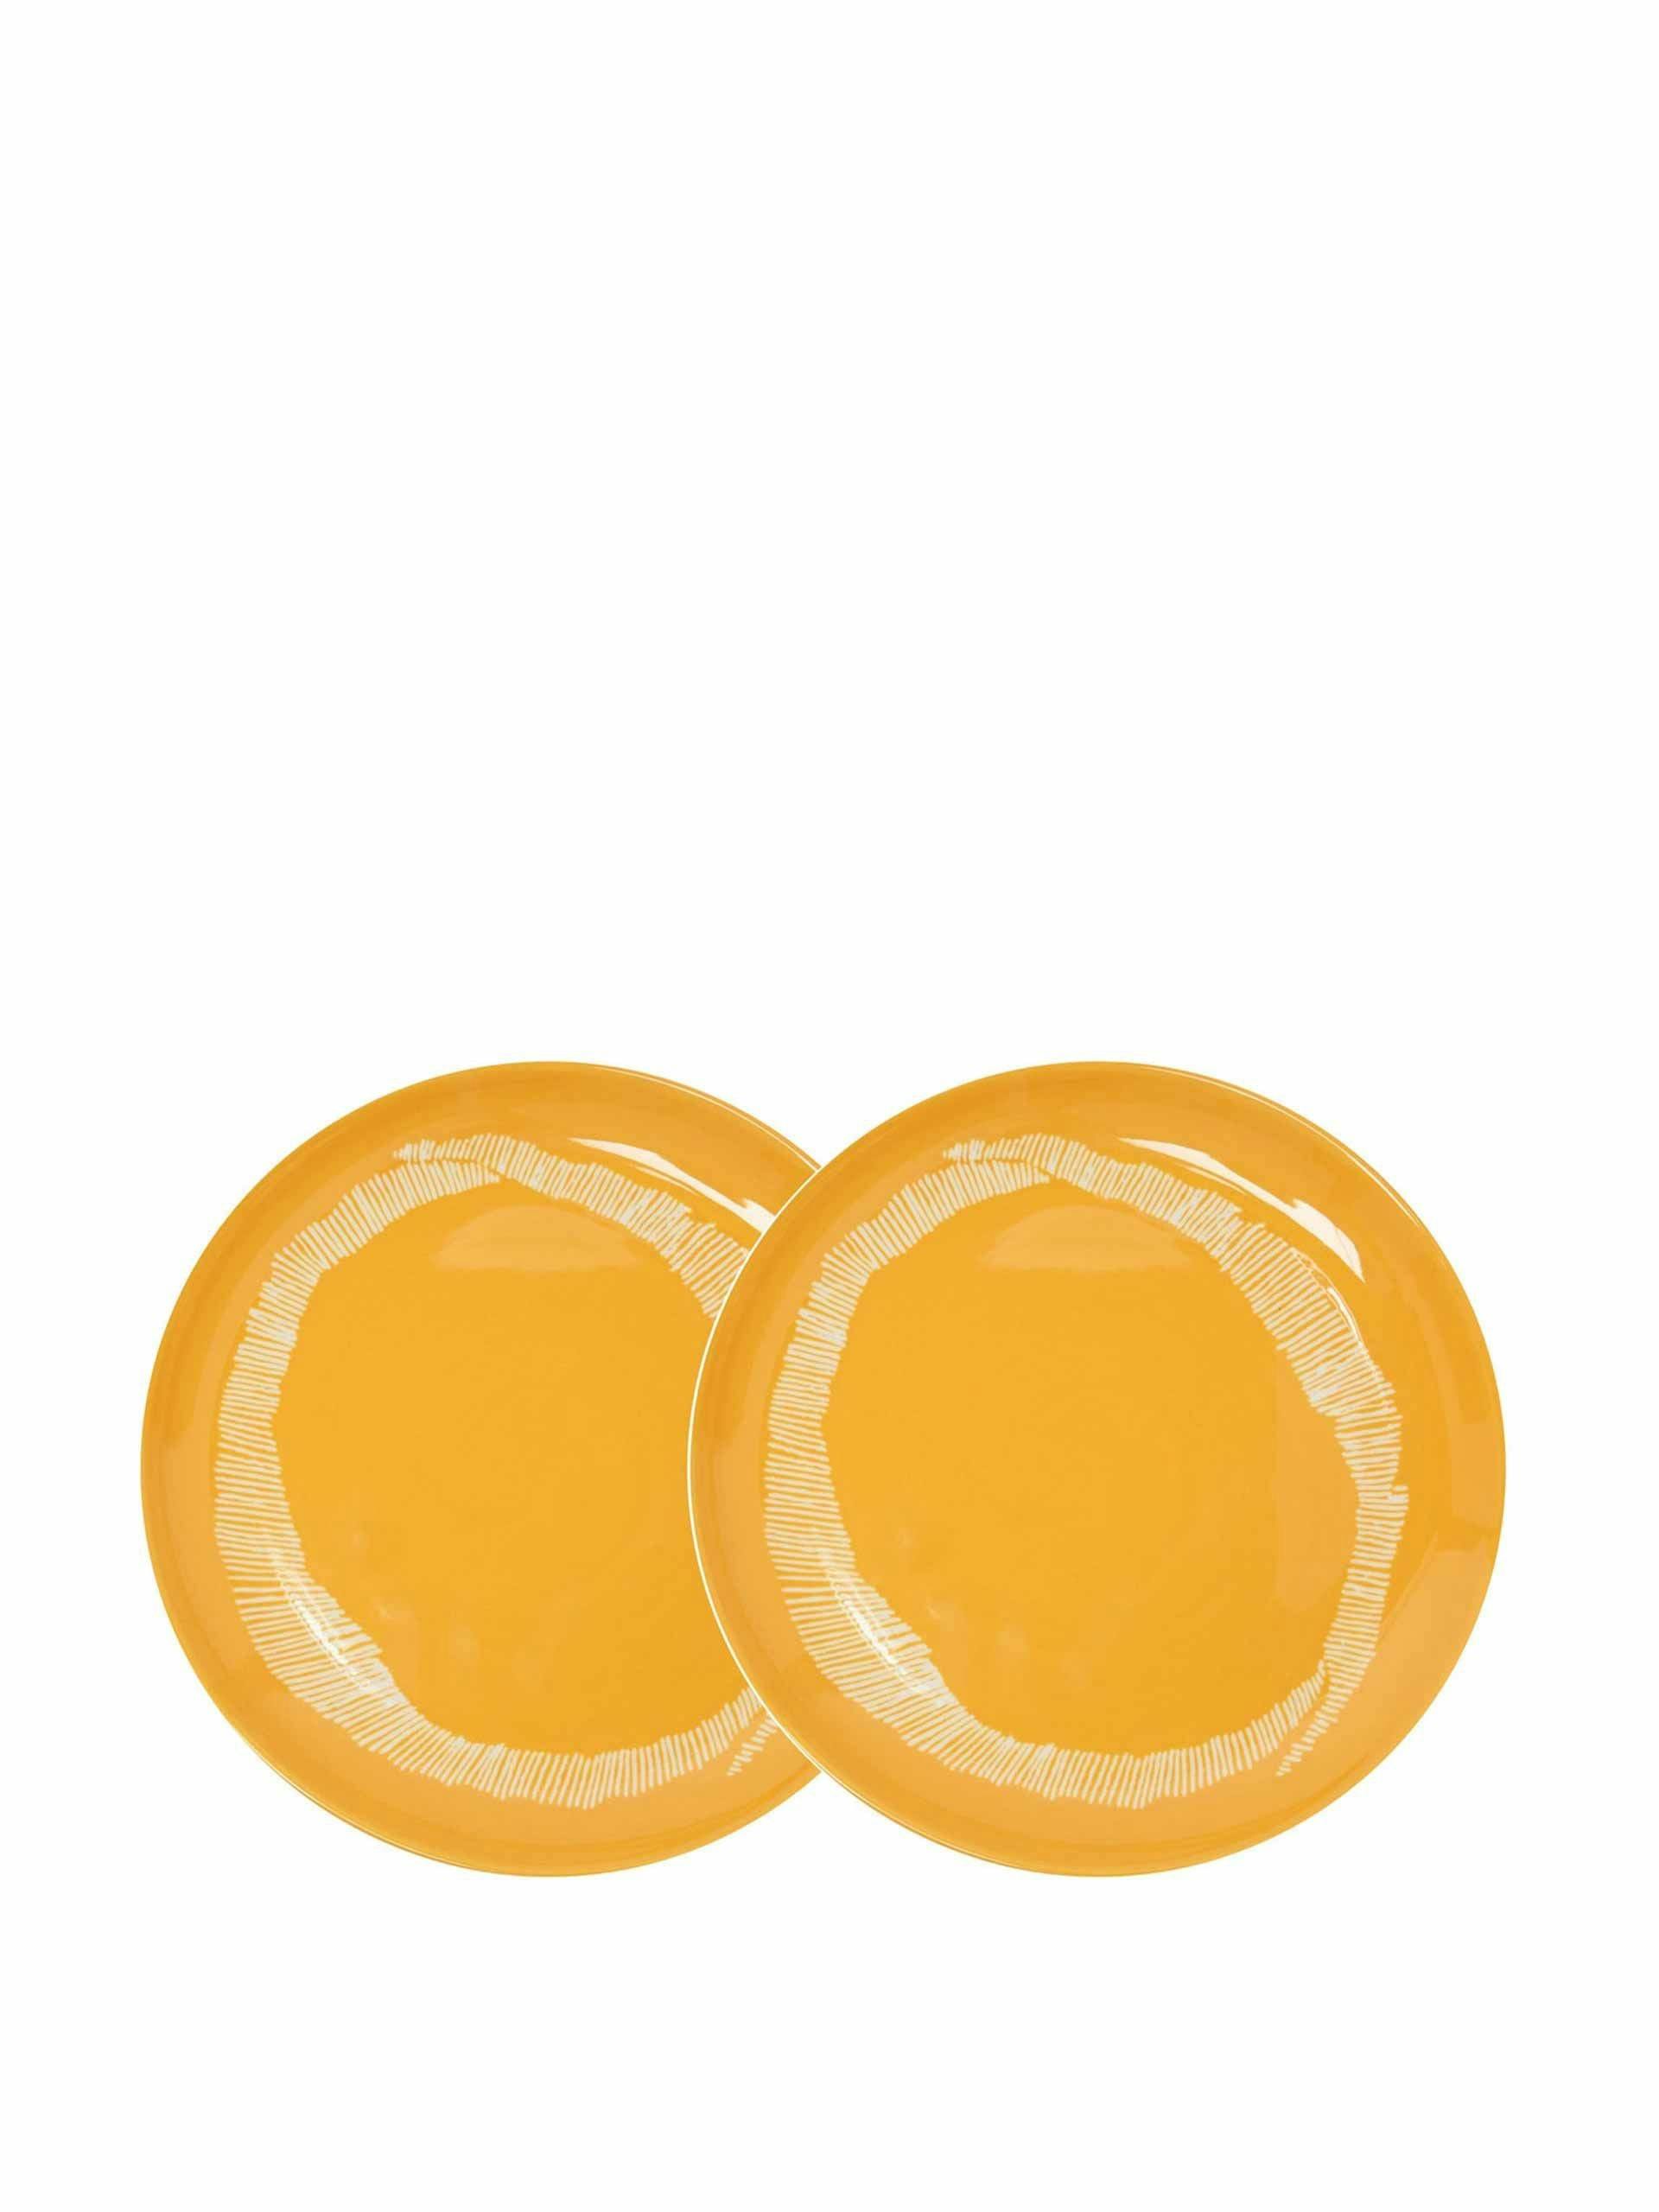 Pair of orange medium plates